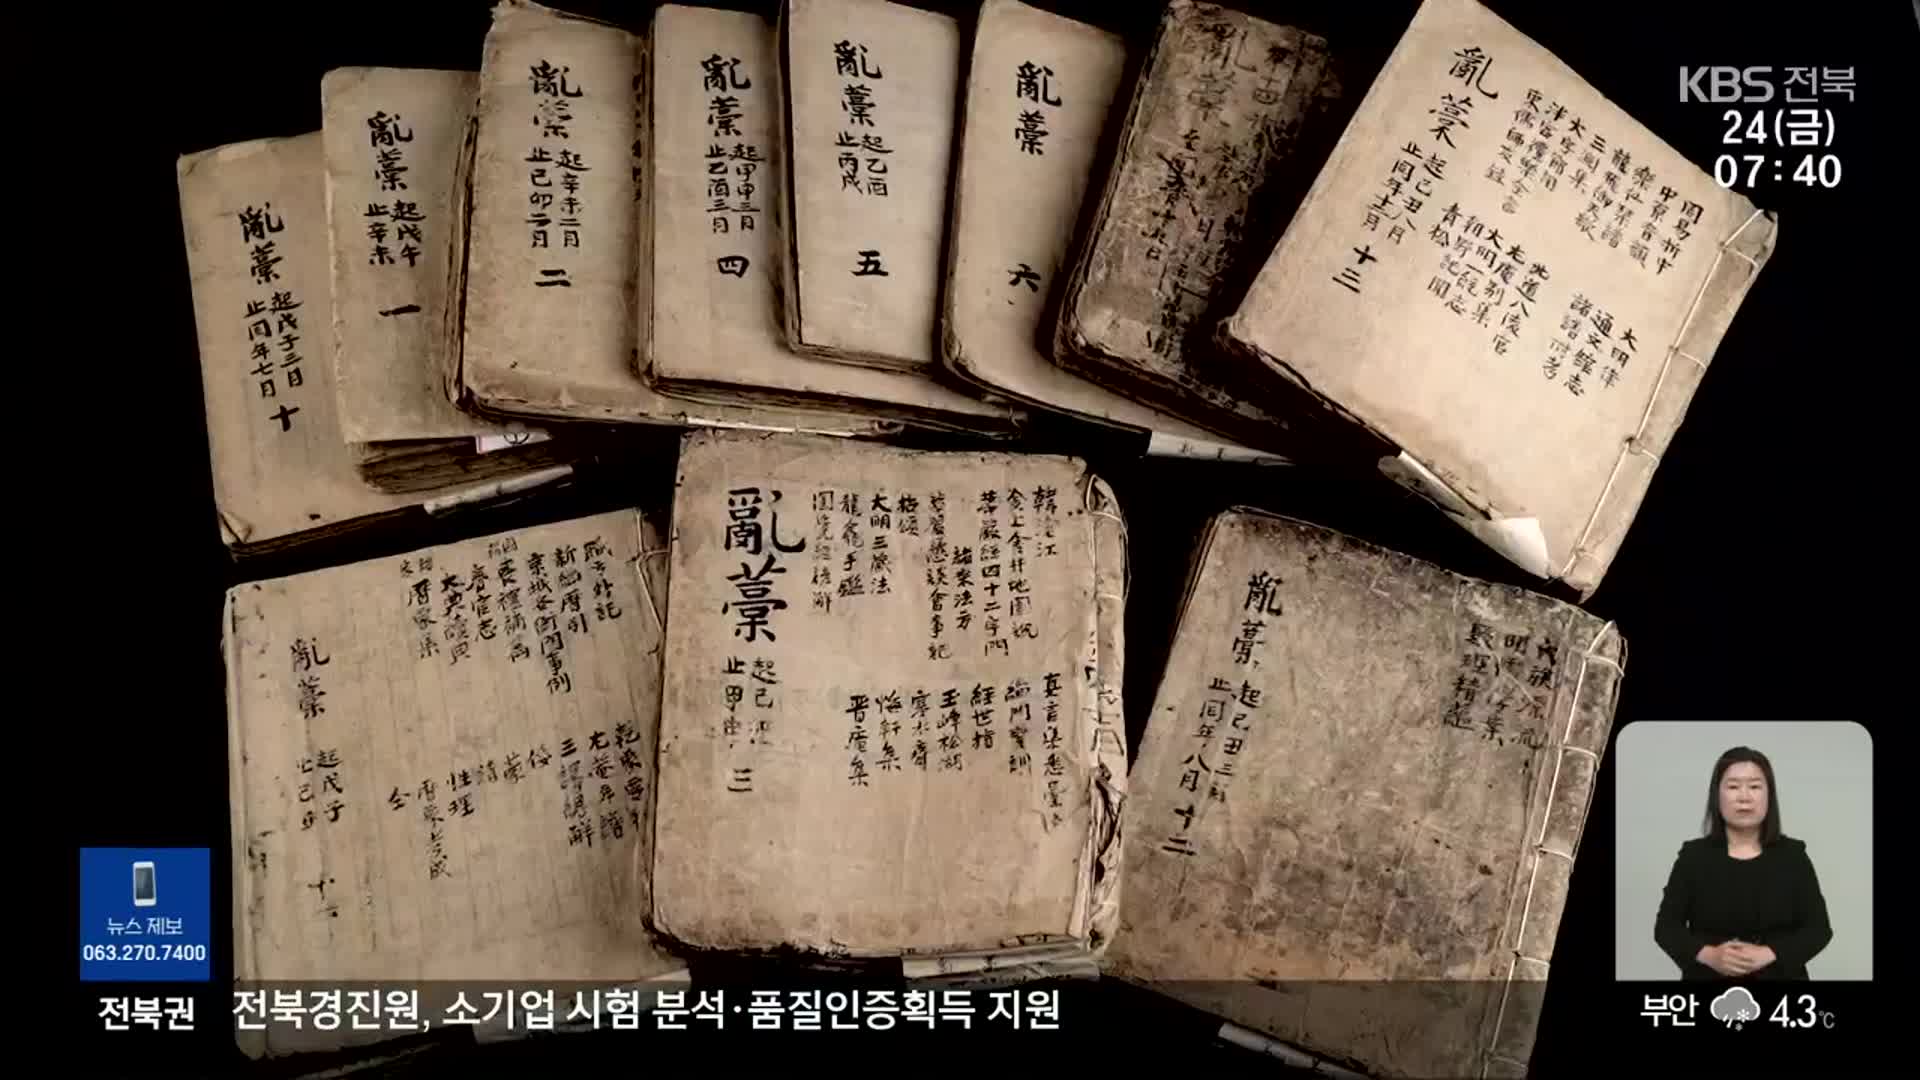 [전북의 창] 조선 ‘과학보고’ 이재난고, 국가기술자료로 등록